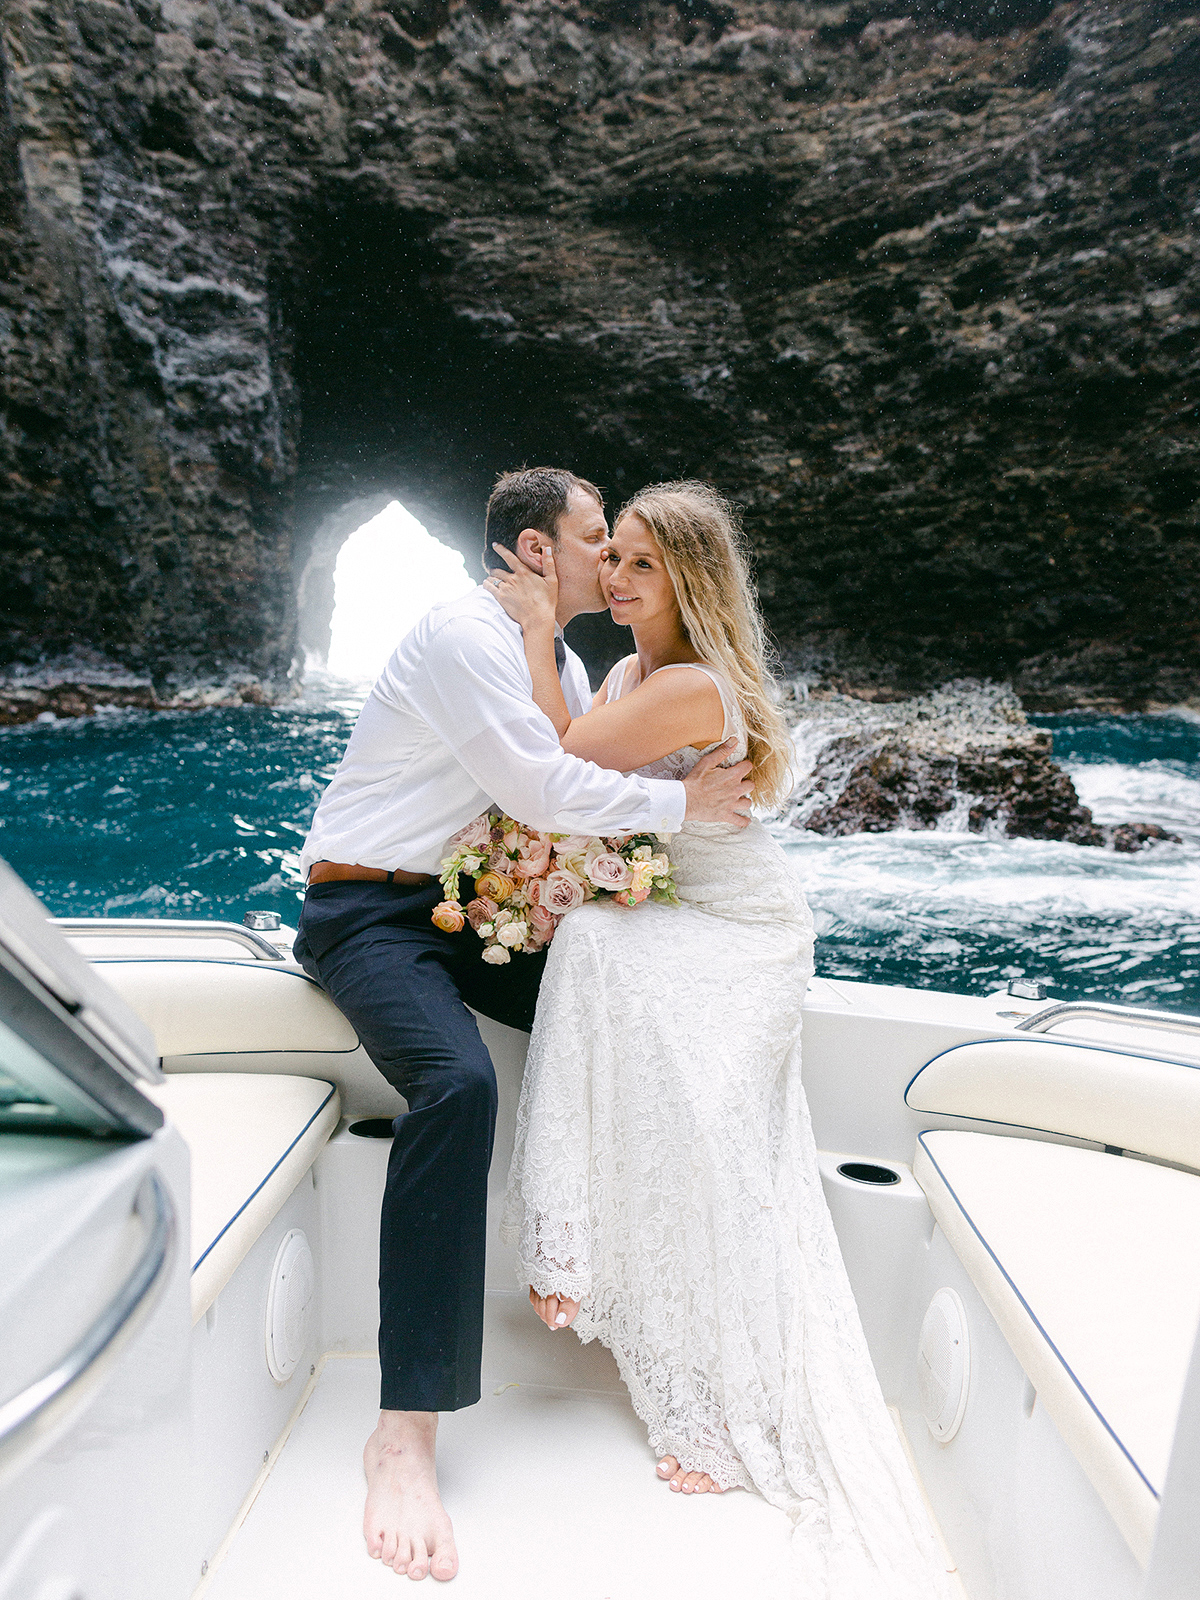 Napali Coast, Kauai wedding photography by Laura Ivanova